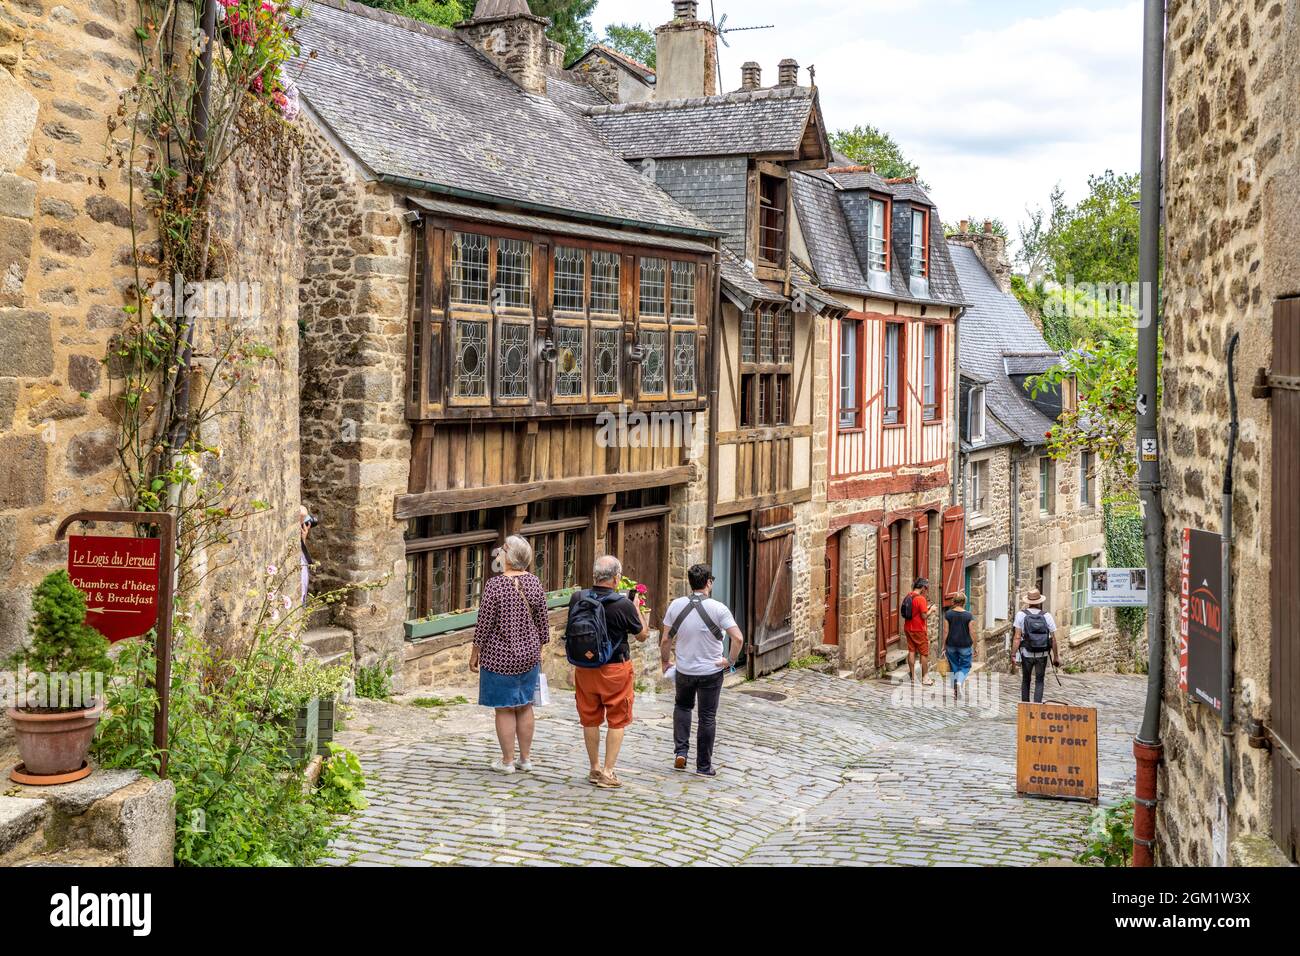 Fachwerk in der historischen Altstadt von Dinan, Bretagne, Frankreich | Fachwerkhäuser in der historischen Innenstadt, Dinan, Bretagne, Frankreich Stockfoto